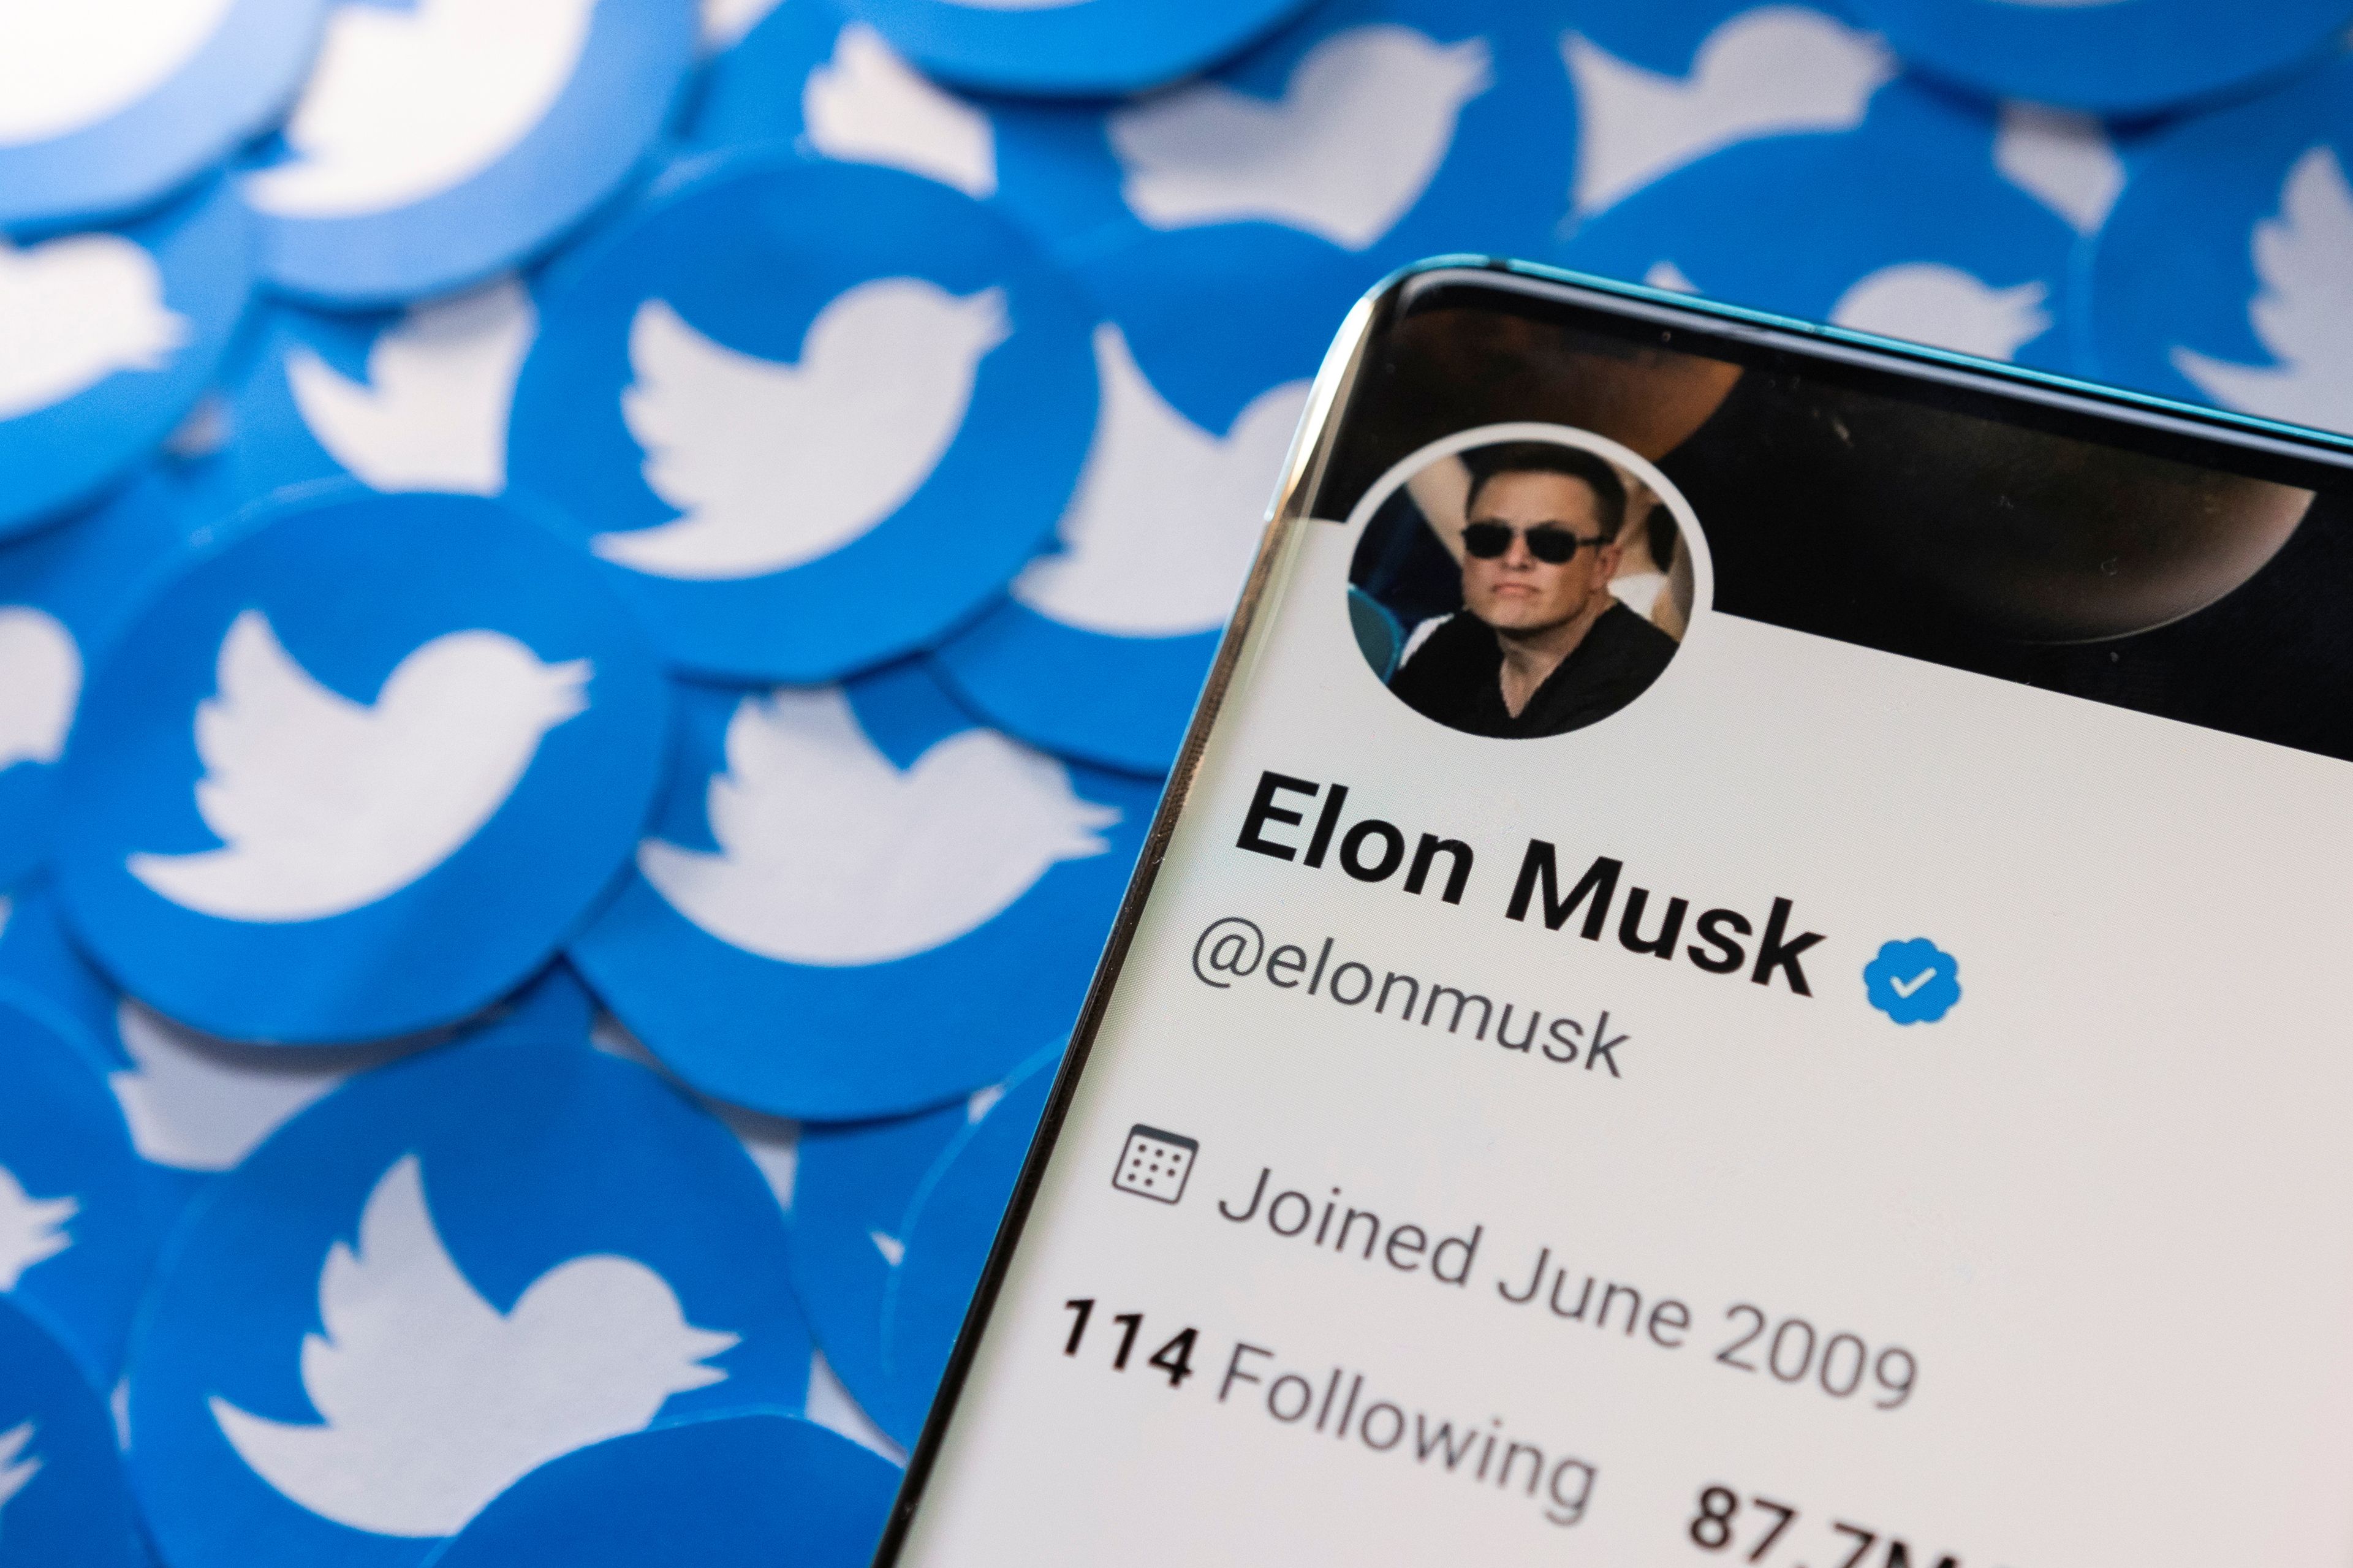 Ilustración con el perfil de Elon Musk en Twitter.